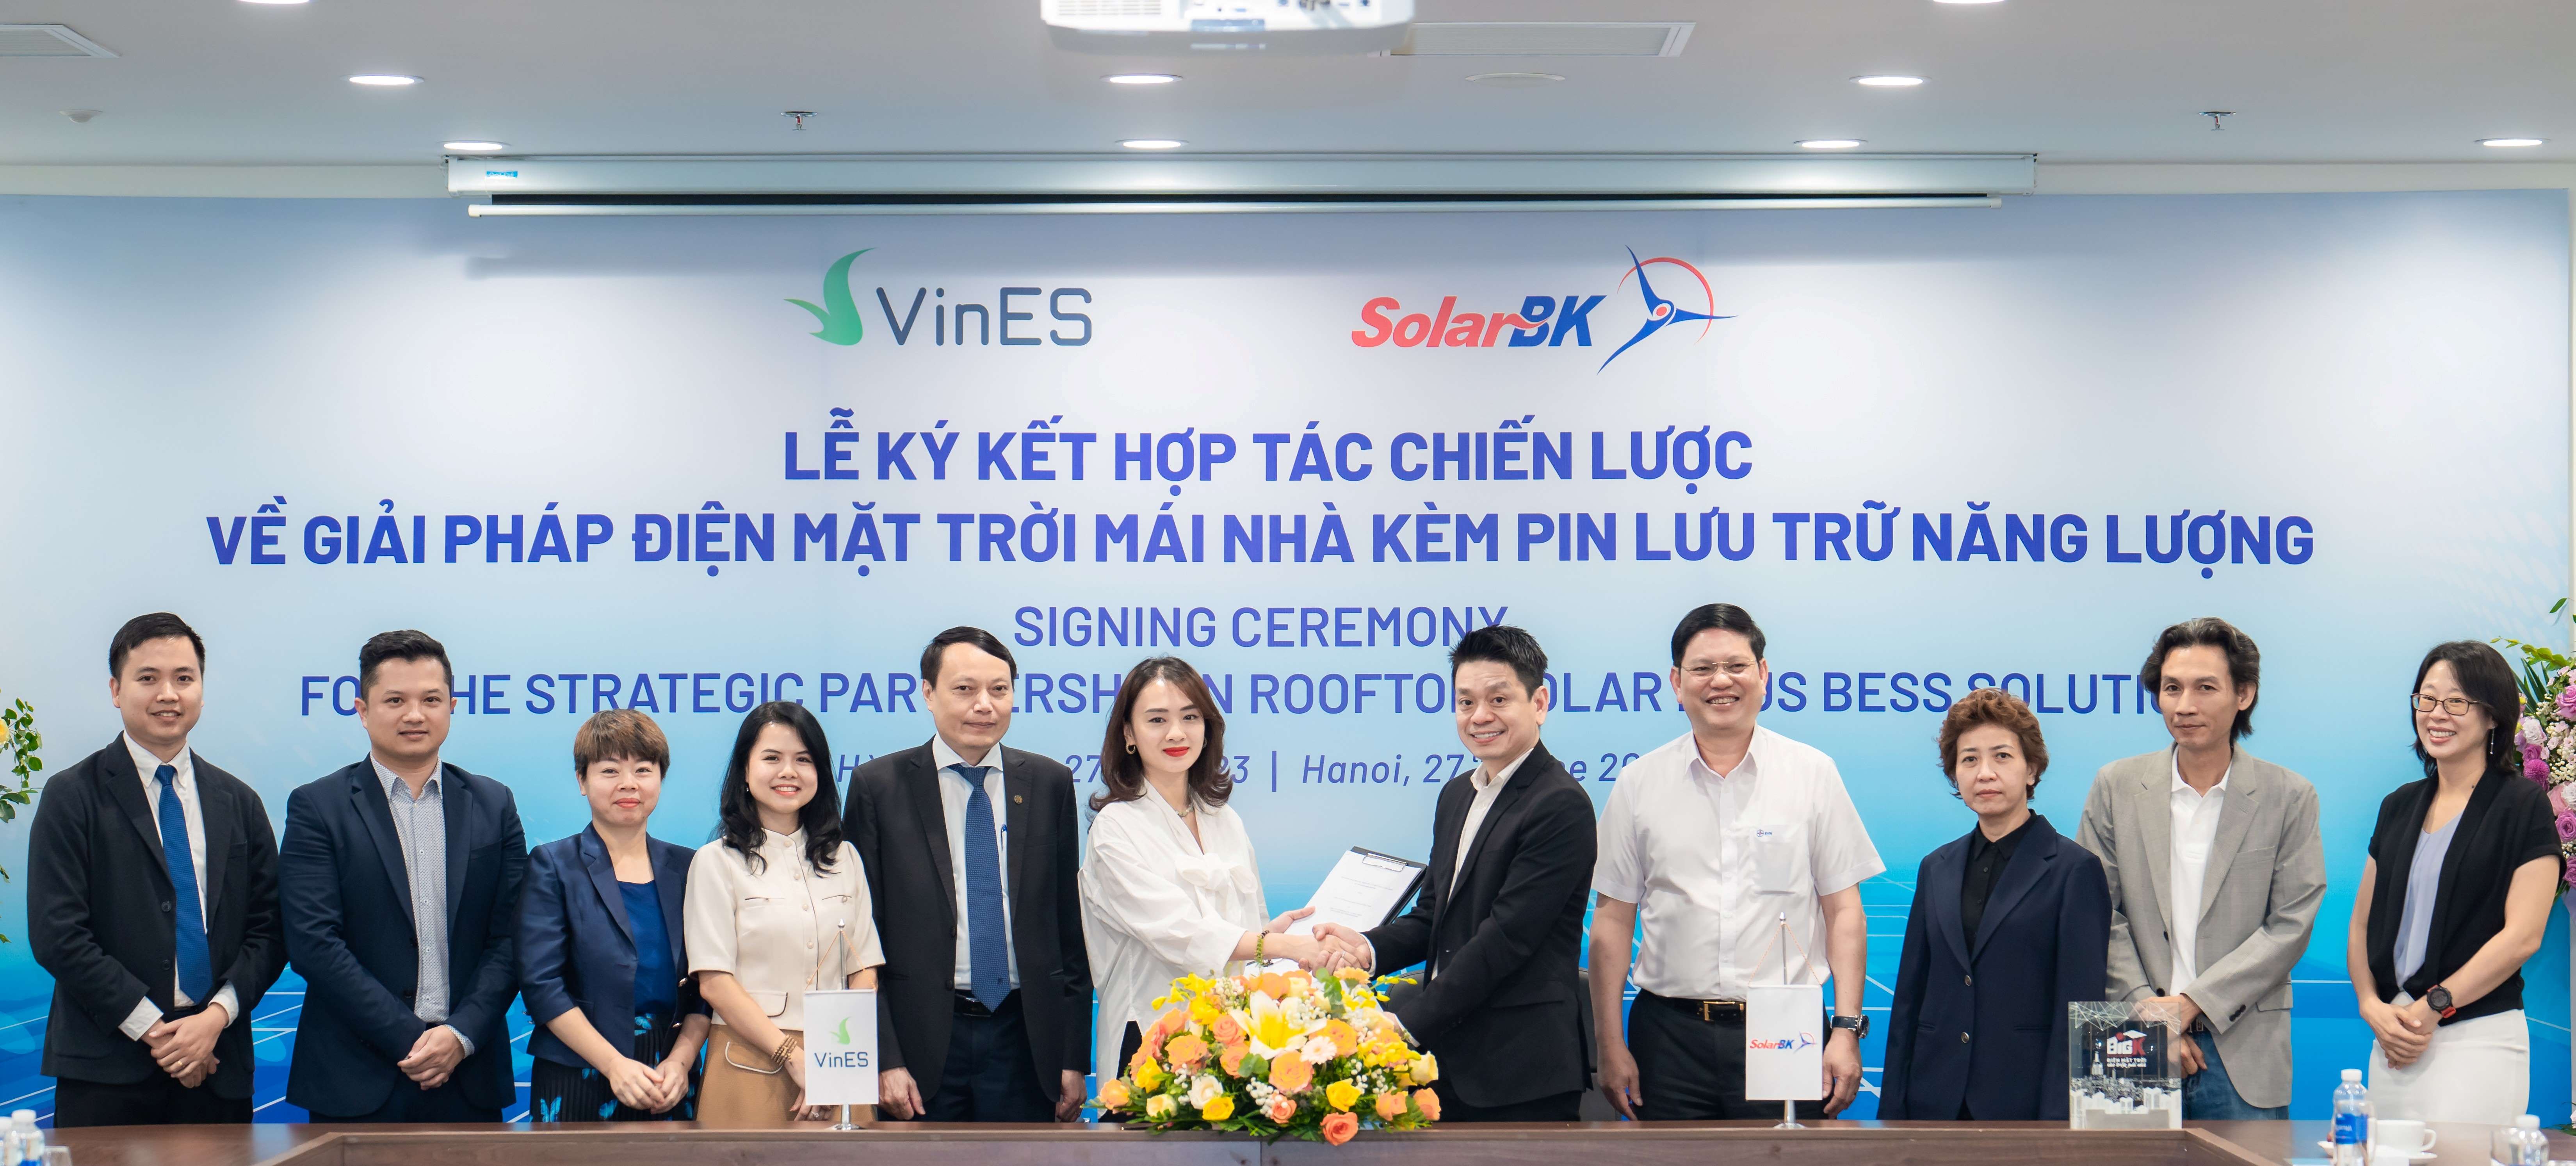 Giải pháp tích hợp điện mặt trời mái nhà kèm pin lưu trữ năng lượng “make in Vietnam”